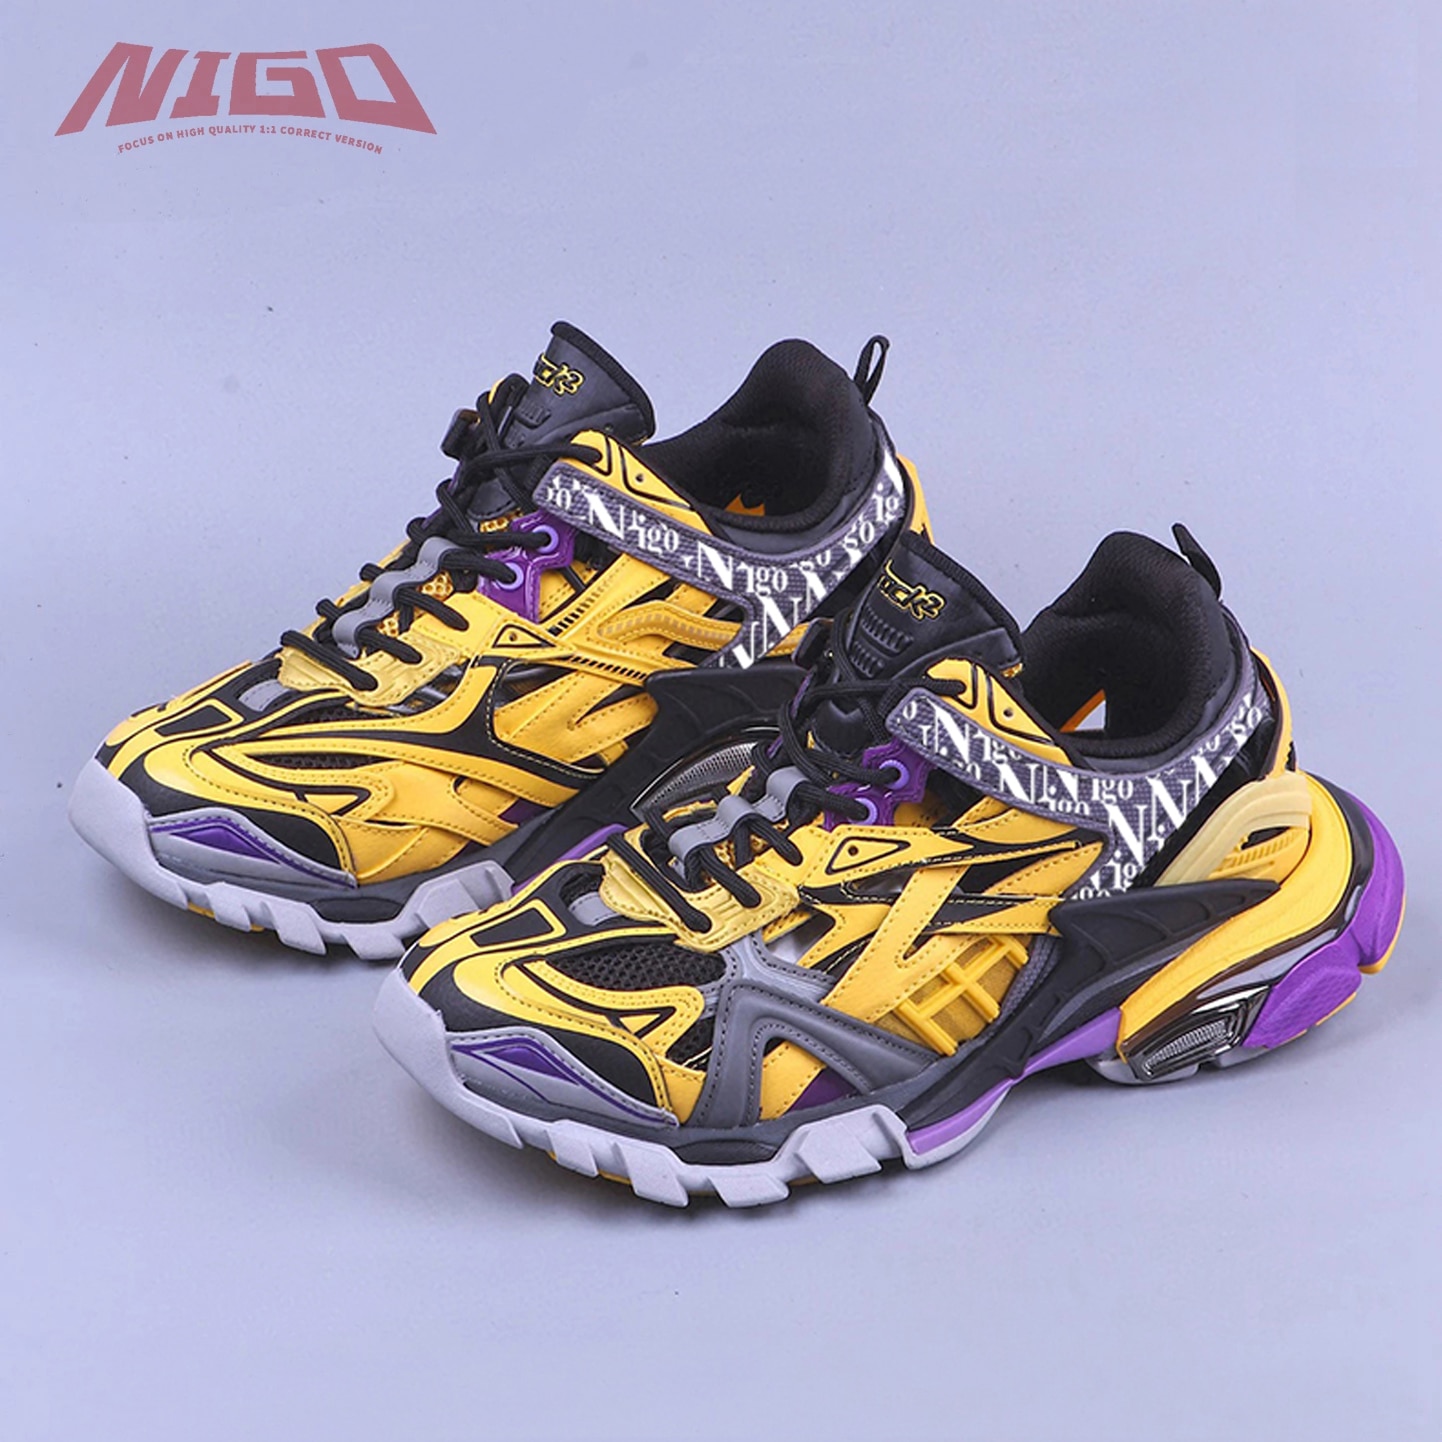 NIGO 21ss Track 4.0 Daddy Sneakers Casual Shoes Original Packaging #nigo518